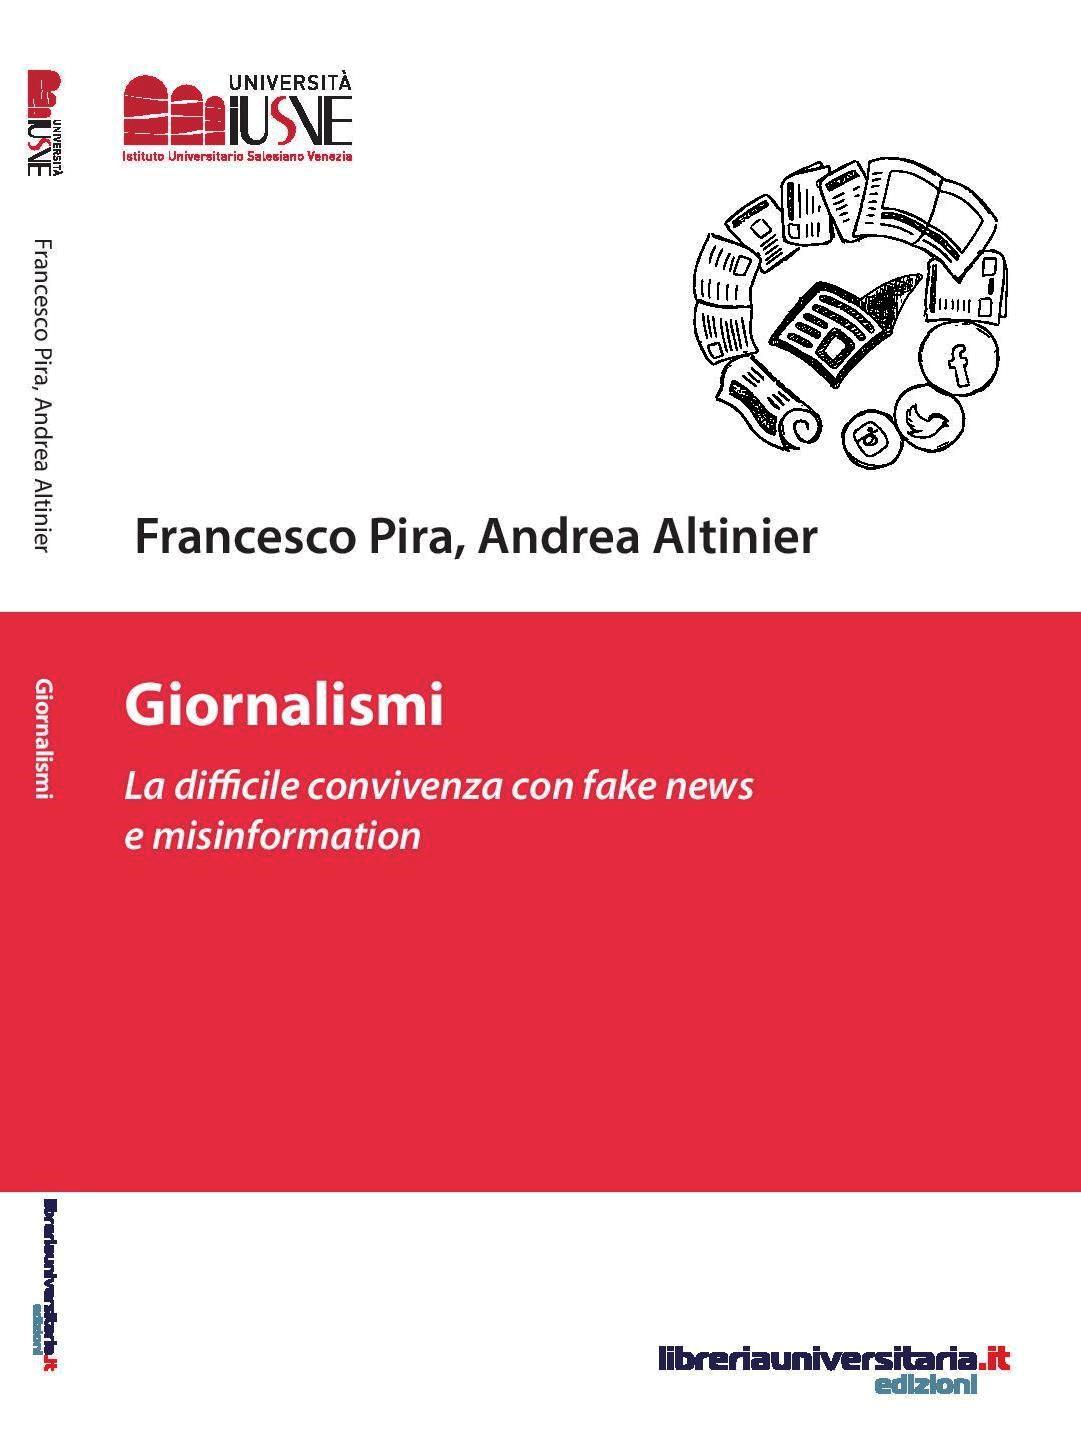 Copertina definitiva libro Francesco Pira Andrea Altinier Giornalismi fronte